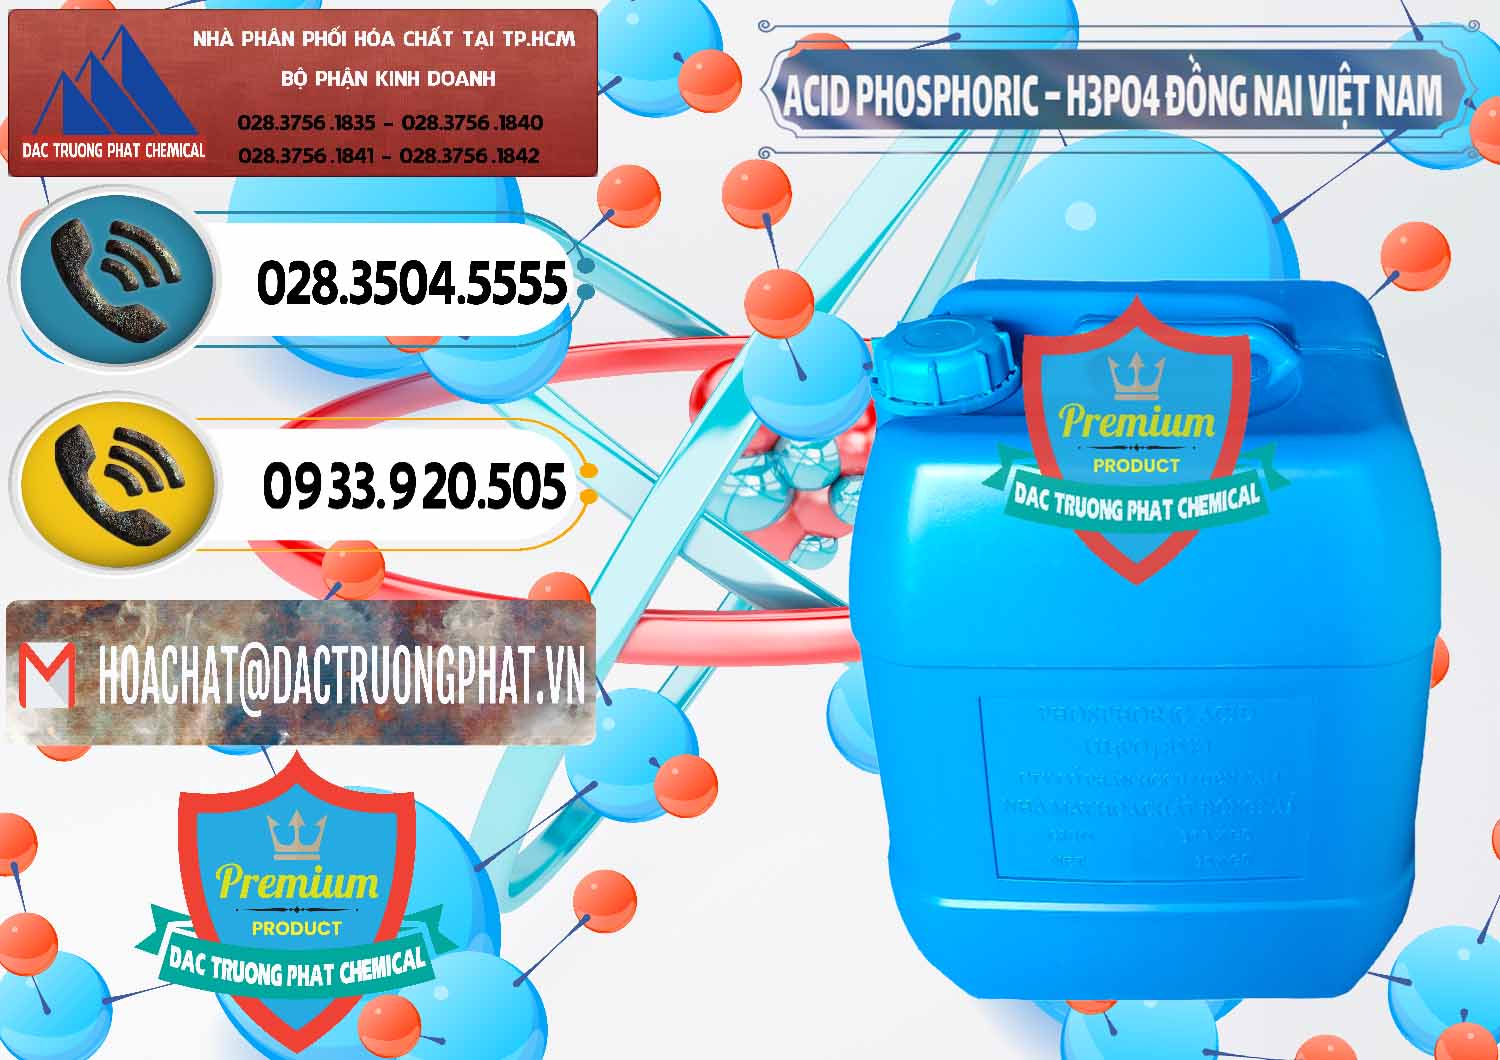 Đơn vị kinh doanh & bán Acid Phosphoric – Axit Phosphoric 85% Đồng Nai Việt Nam - 0183 - Chuyên kinh doanh - phân phối hóa chất tại TP.HCM - hoachatdetnhuom.vn